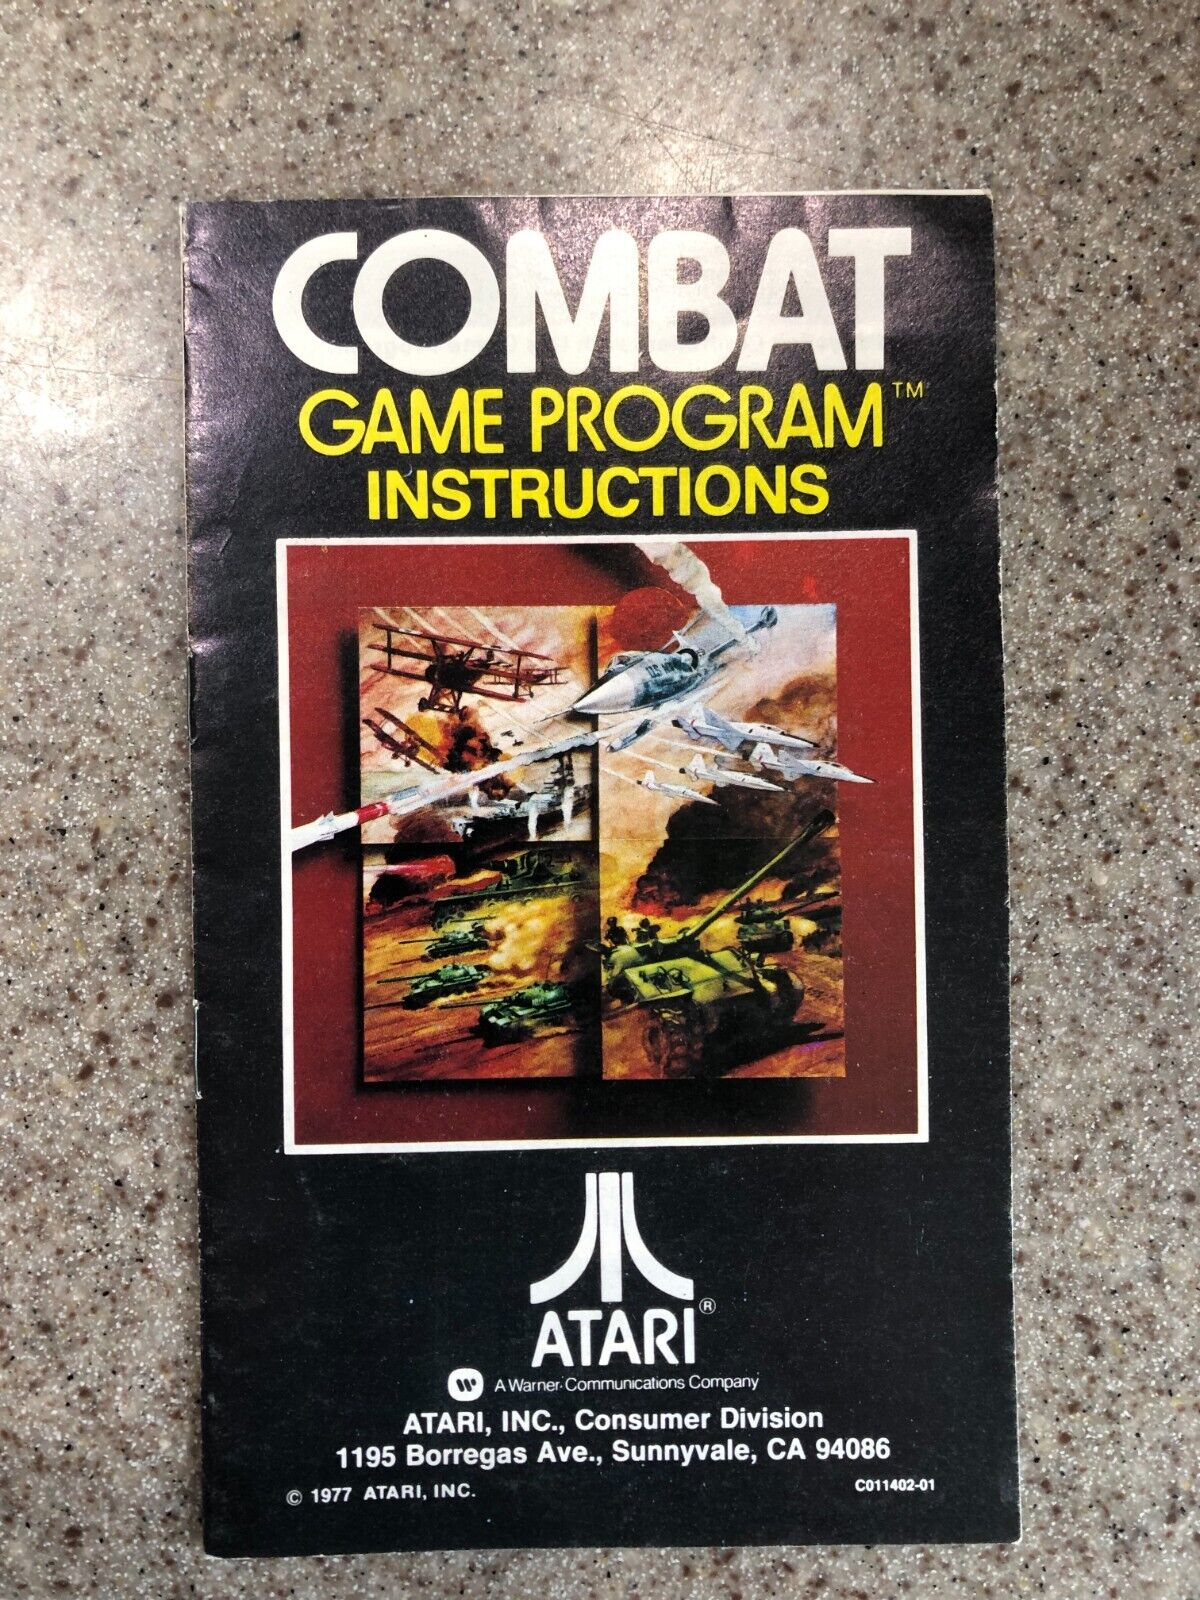 Atari 2600 manuals lot - your choice